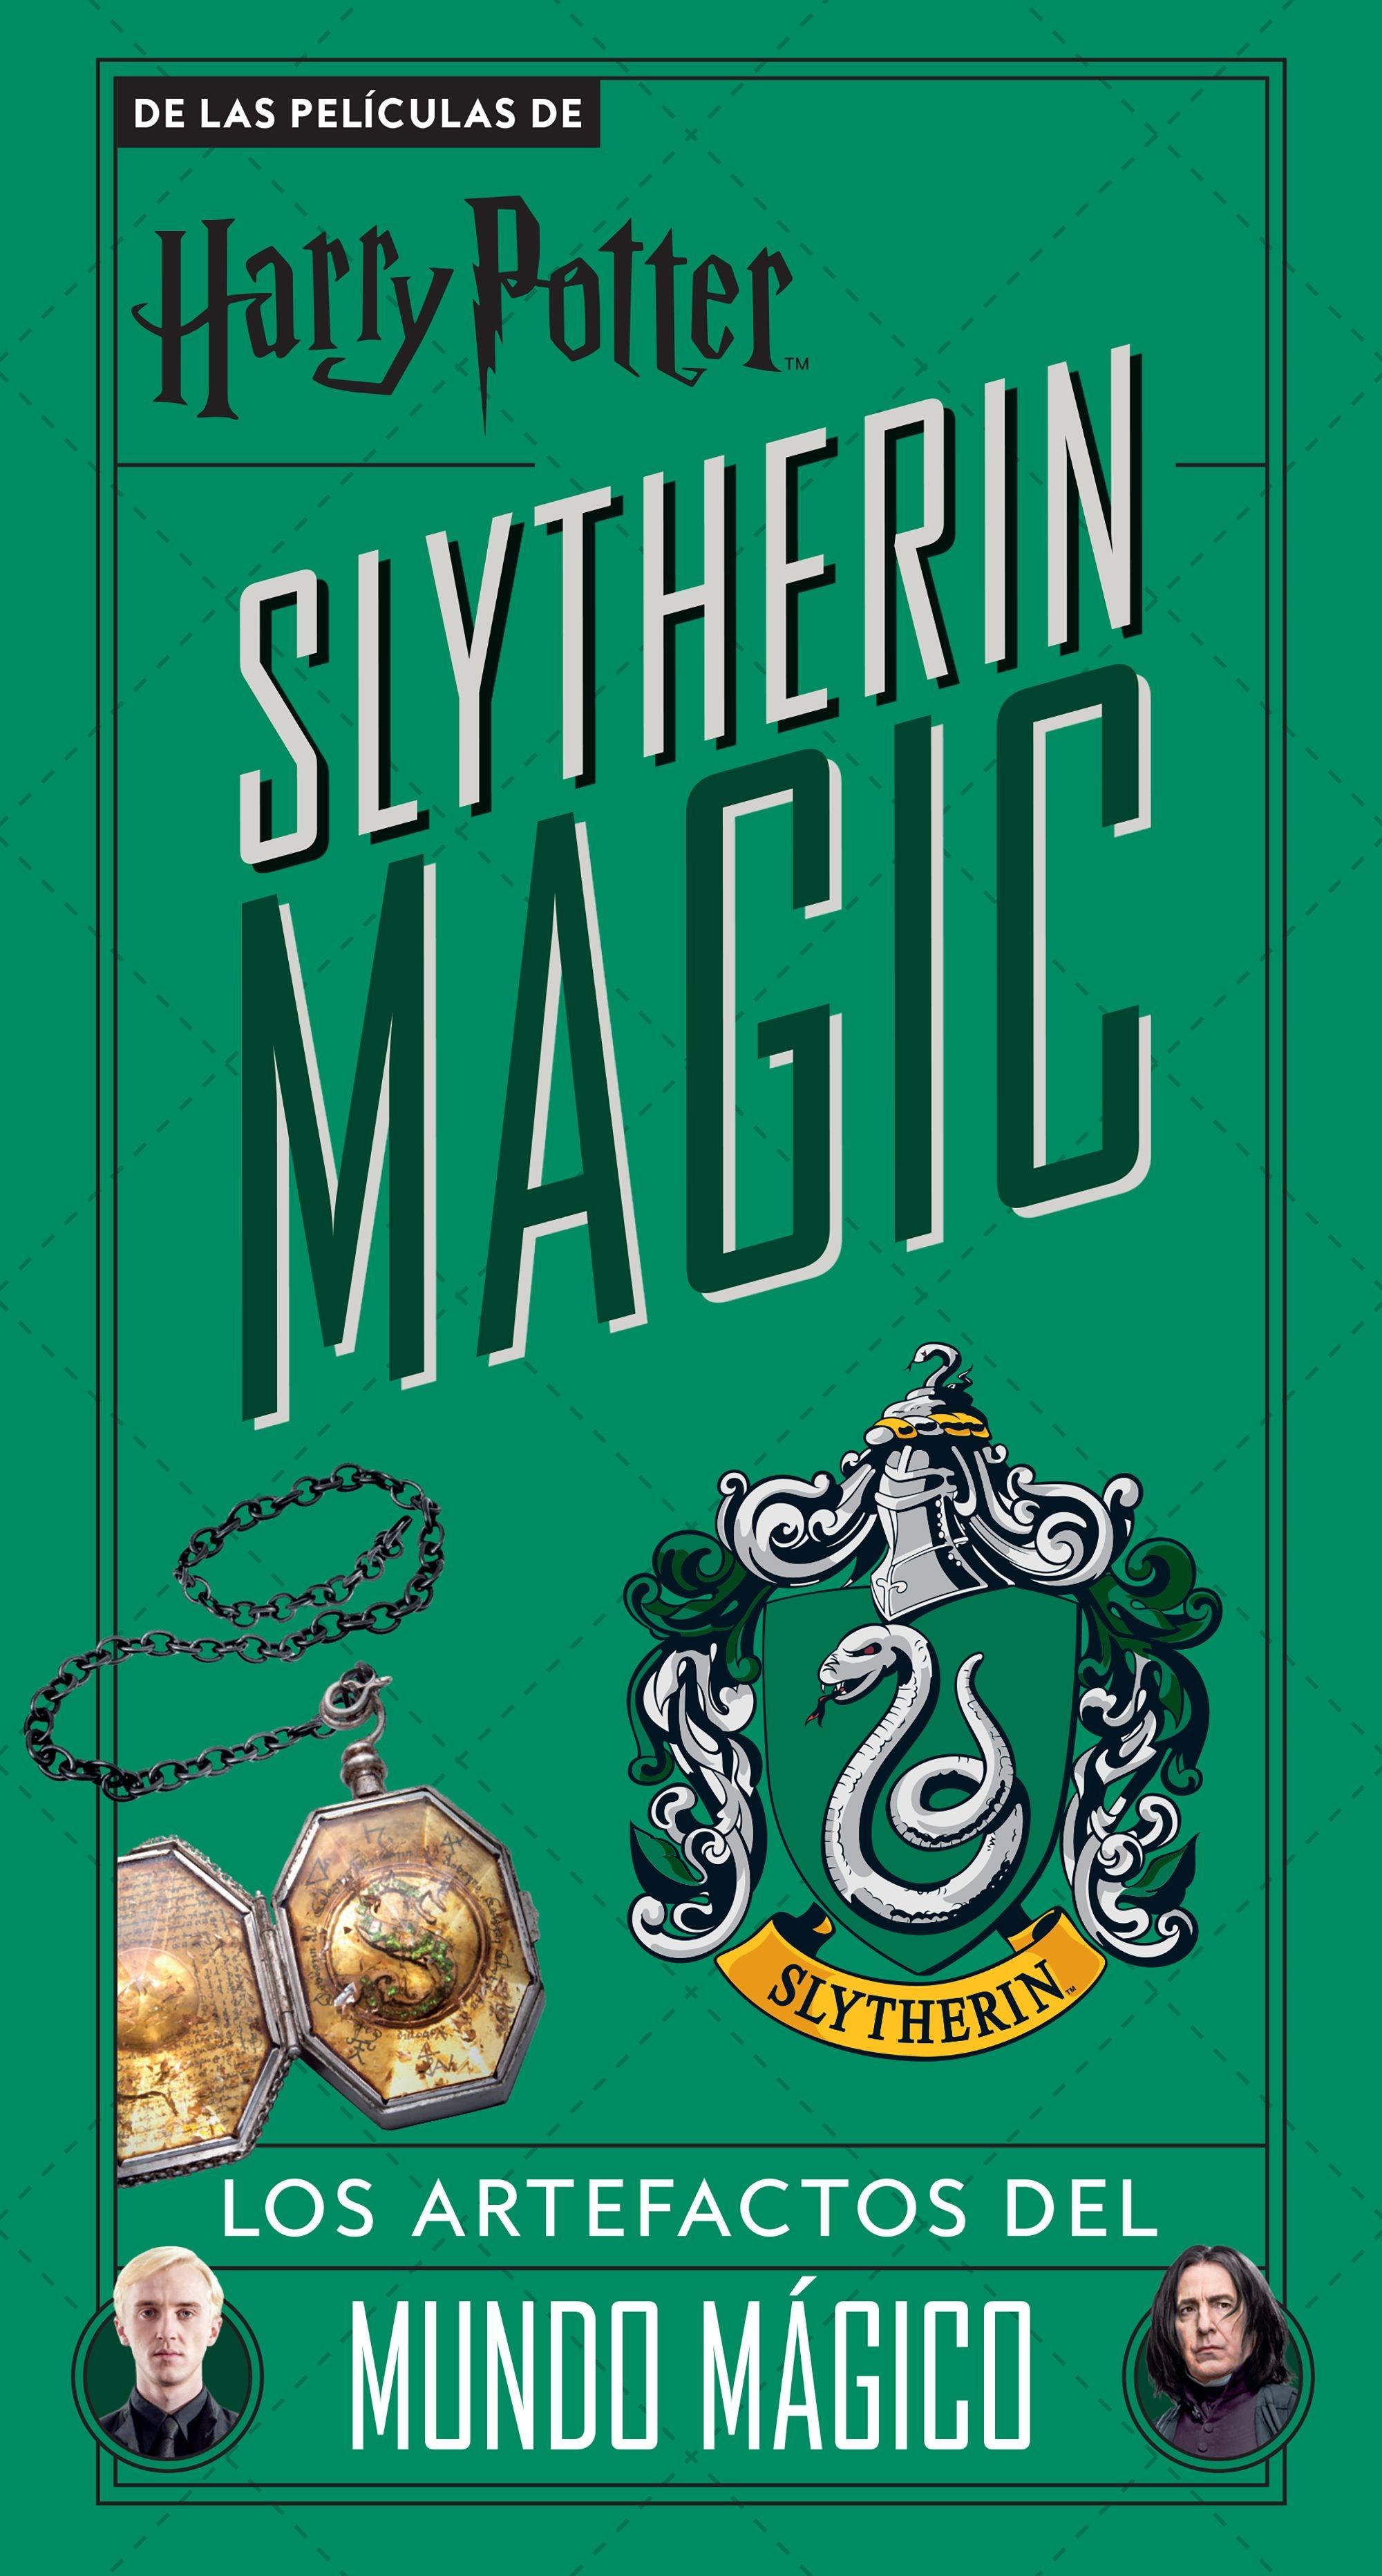 Harry Potter Slytherin Magic "Los Artefactos del Mundo Mágico"